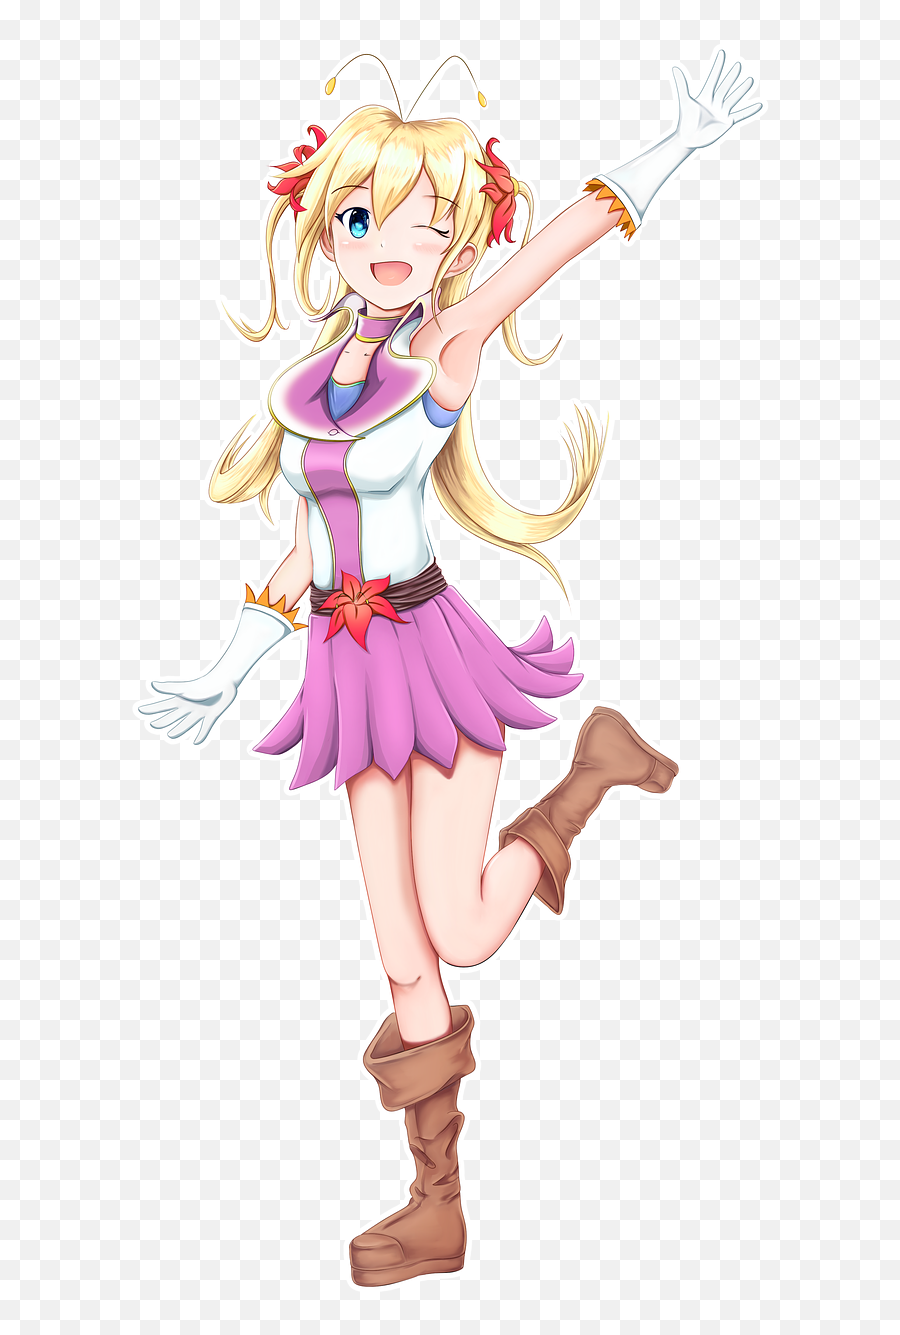 Girl Anime Manga Japanese - Free Image On Pixabay Anime Japanese Girl Png,Anime Png Images